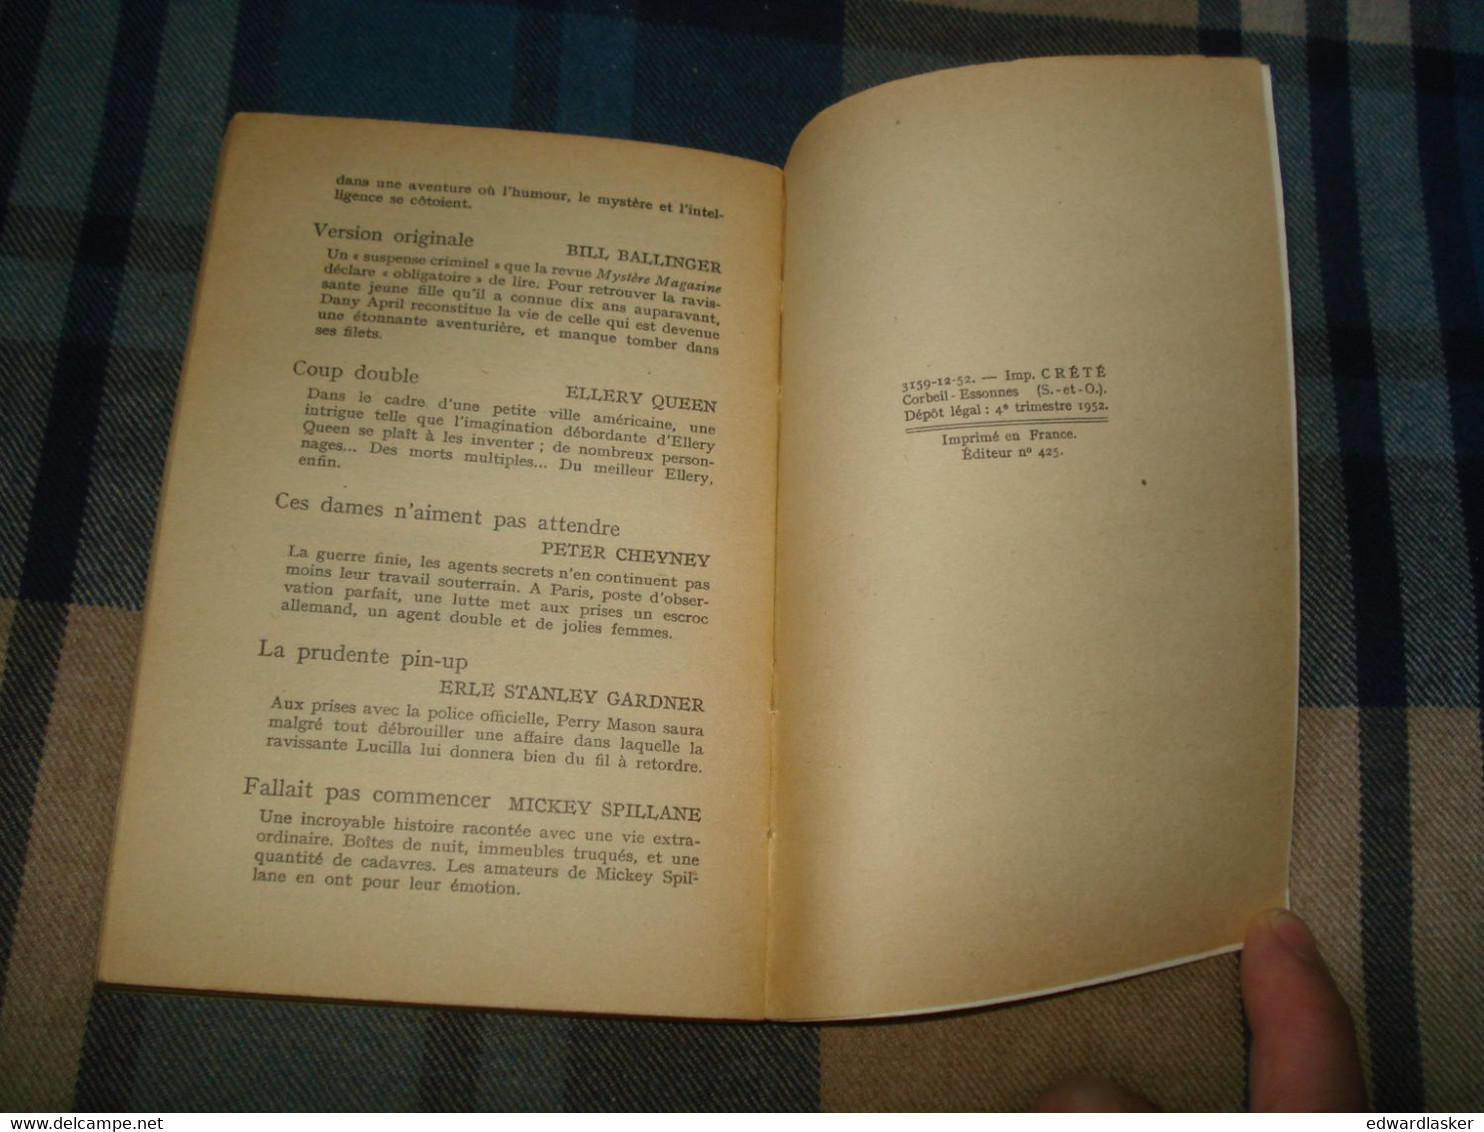 Un MYSTERE N°110 : CALENDRIER Du CRIME /Ellery QUEEN - Décembre 1952 - Presses De La Cité